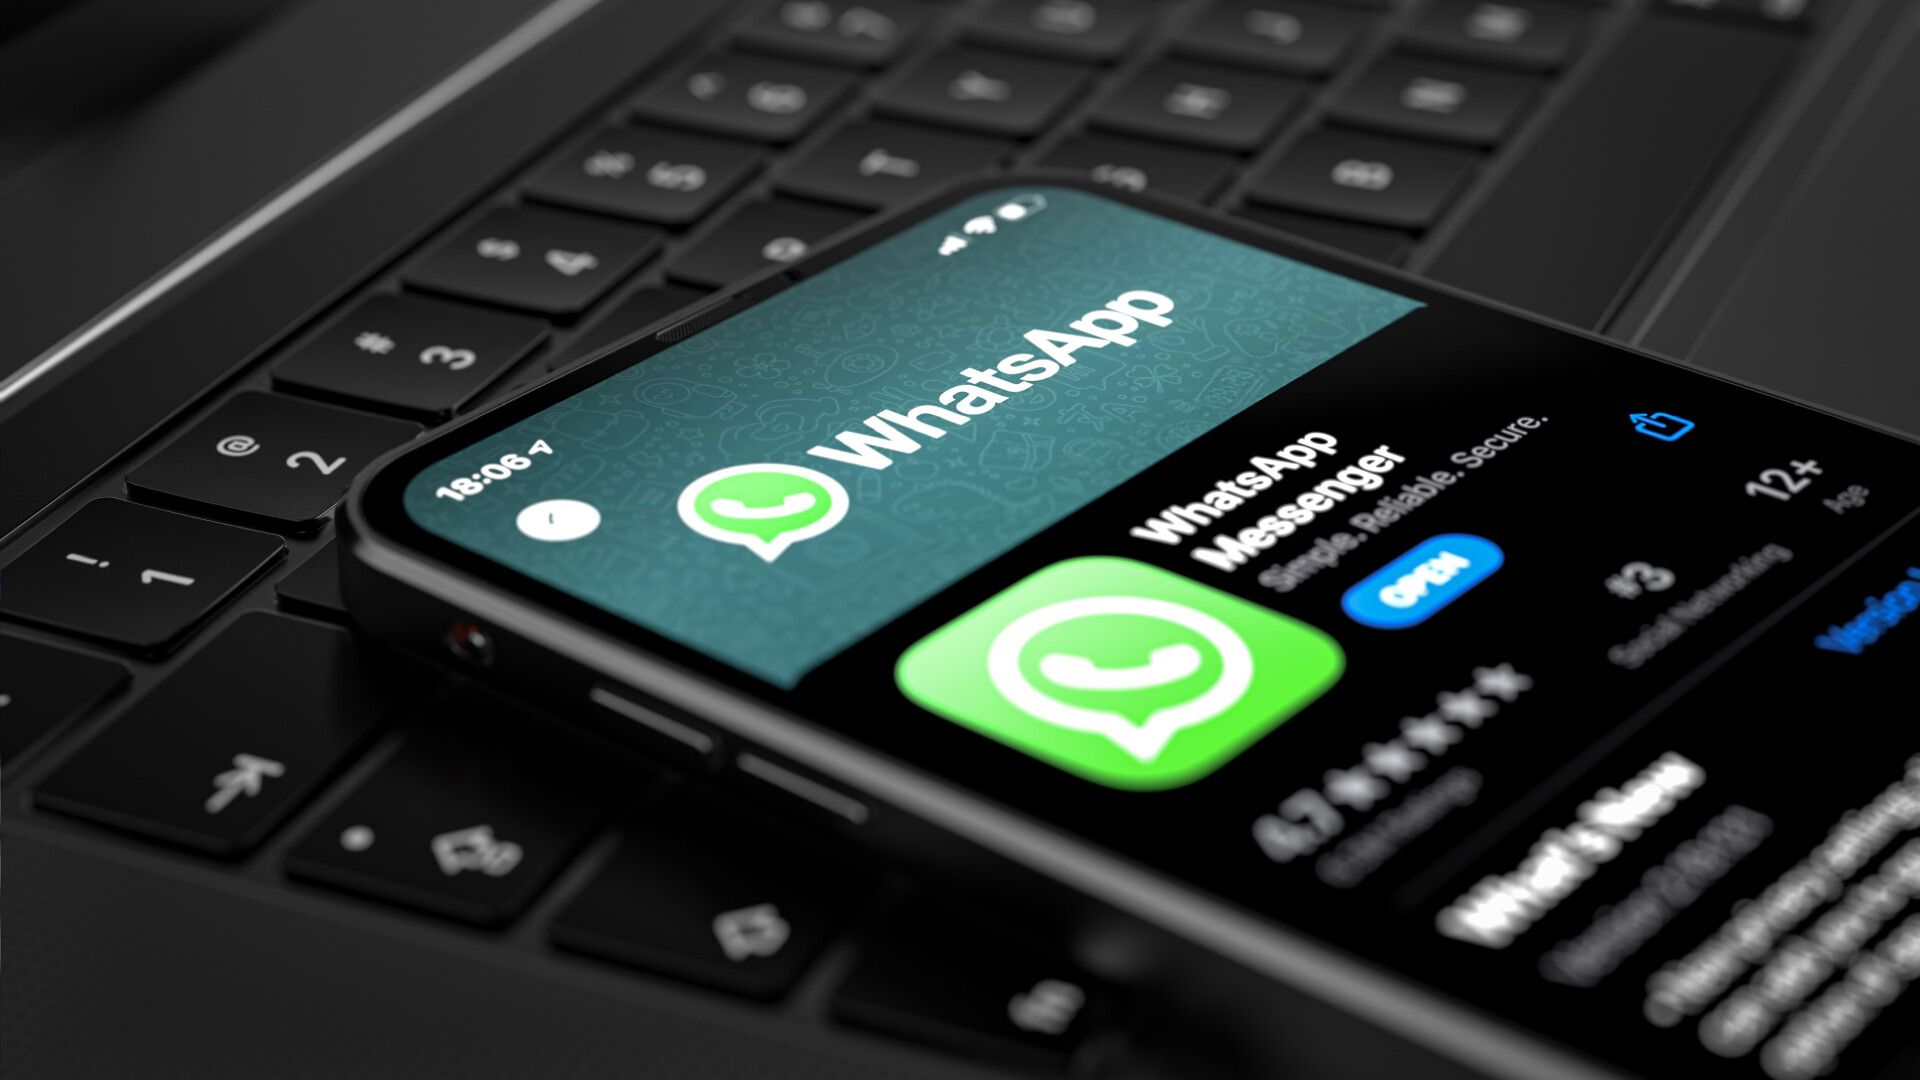 Cum te poți trezi cu contul de WhatsApp șters dacă rulezi aceste aplicații pe telefonul tău